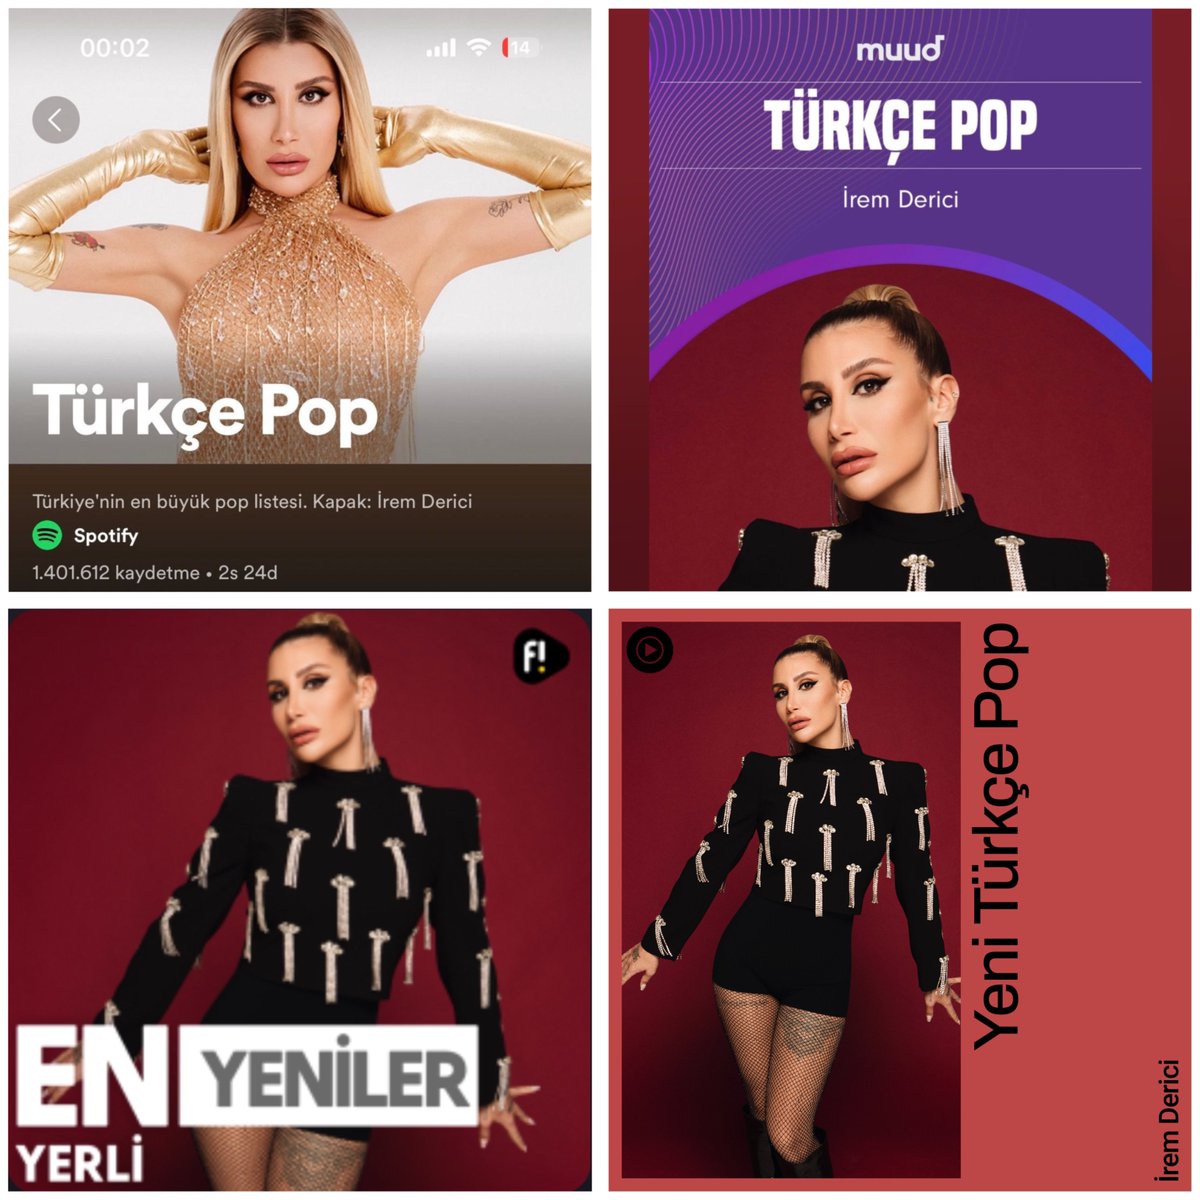 İrem Derici, yeni şarkısı ‘Milyonda Bir’ ile Spotify, Muud, Fizy ve Youtube Music’in Türkçe Pop listelerinin kapaklarında! 💥 #iremderici #milyondabir @iremderici